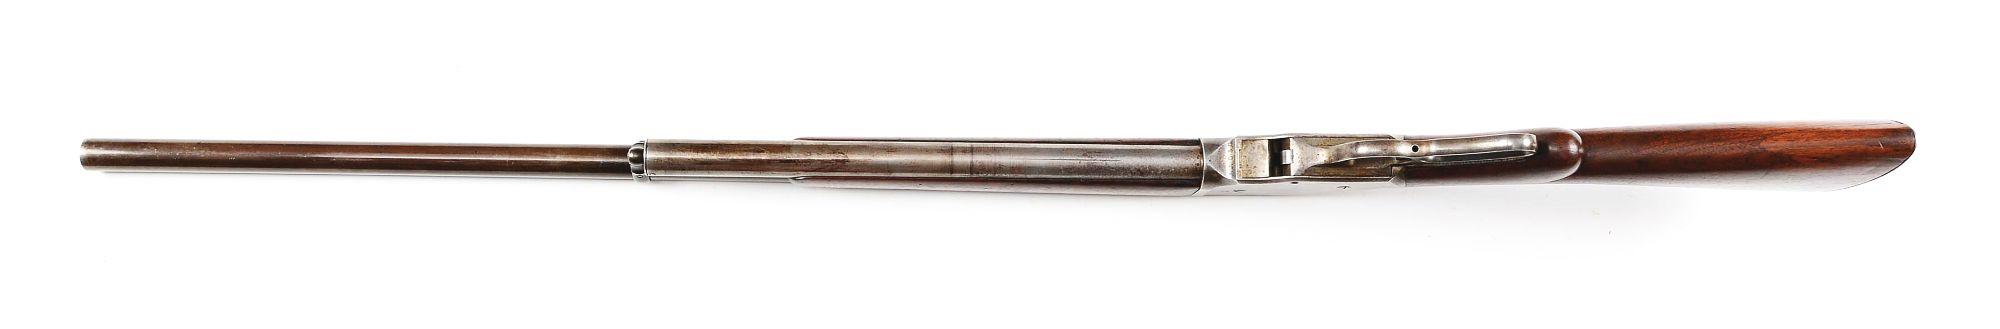 (A) Winchester Model 1887 10 Gauge Lever Action Shotgun (1894).